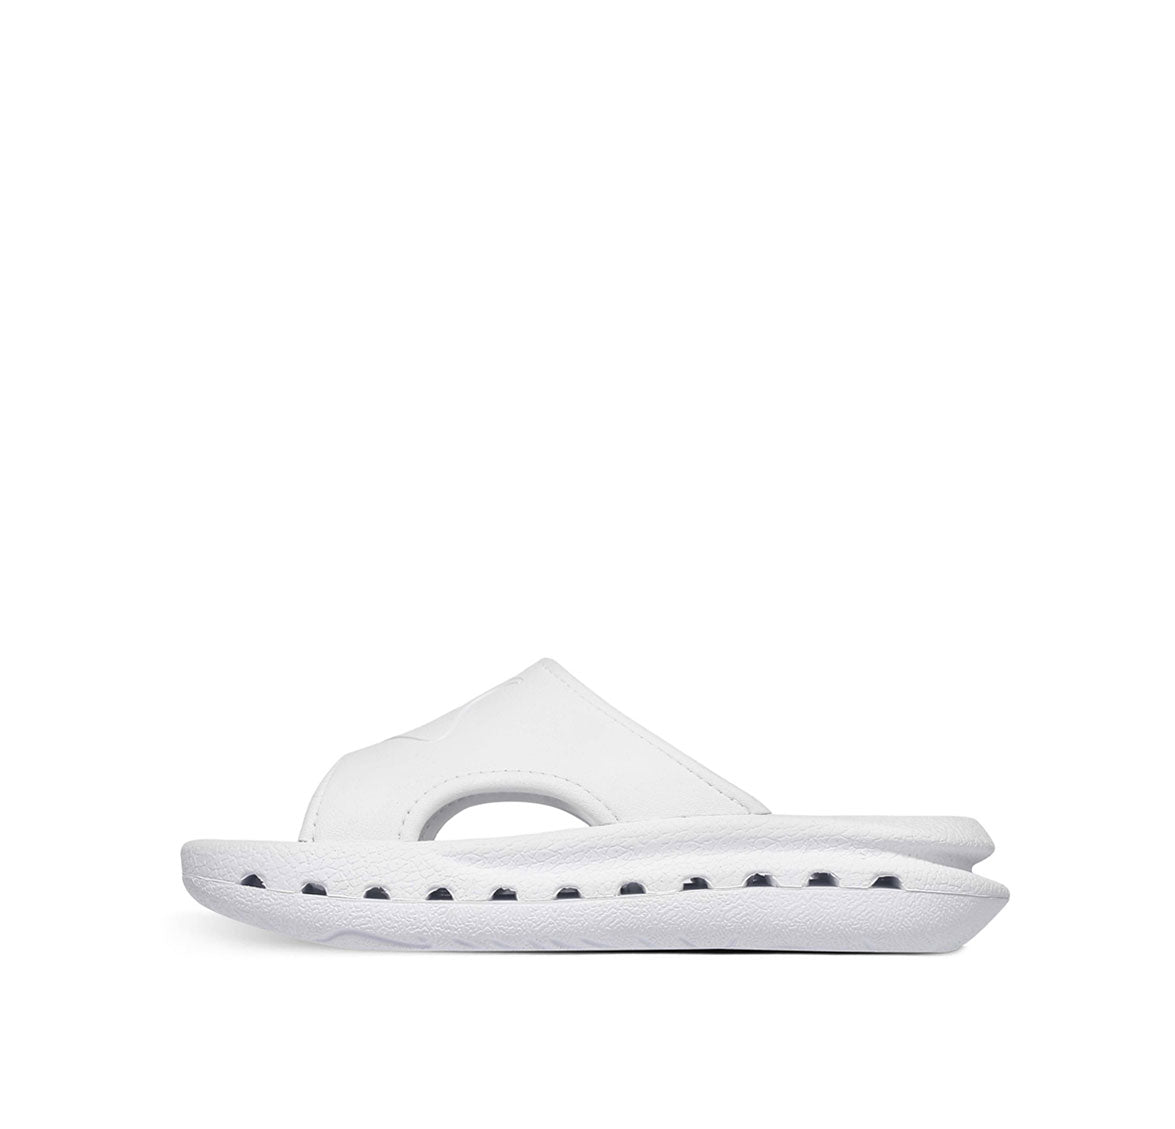 3D Holes Clound Sandals White